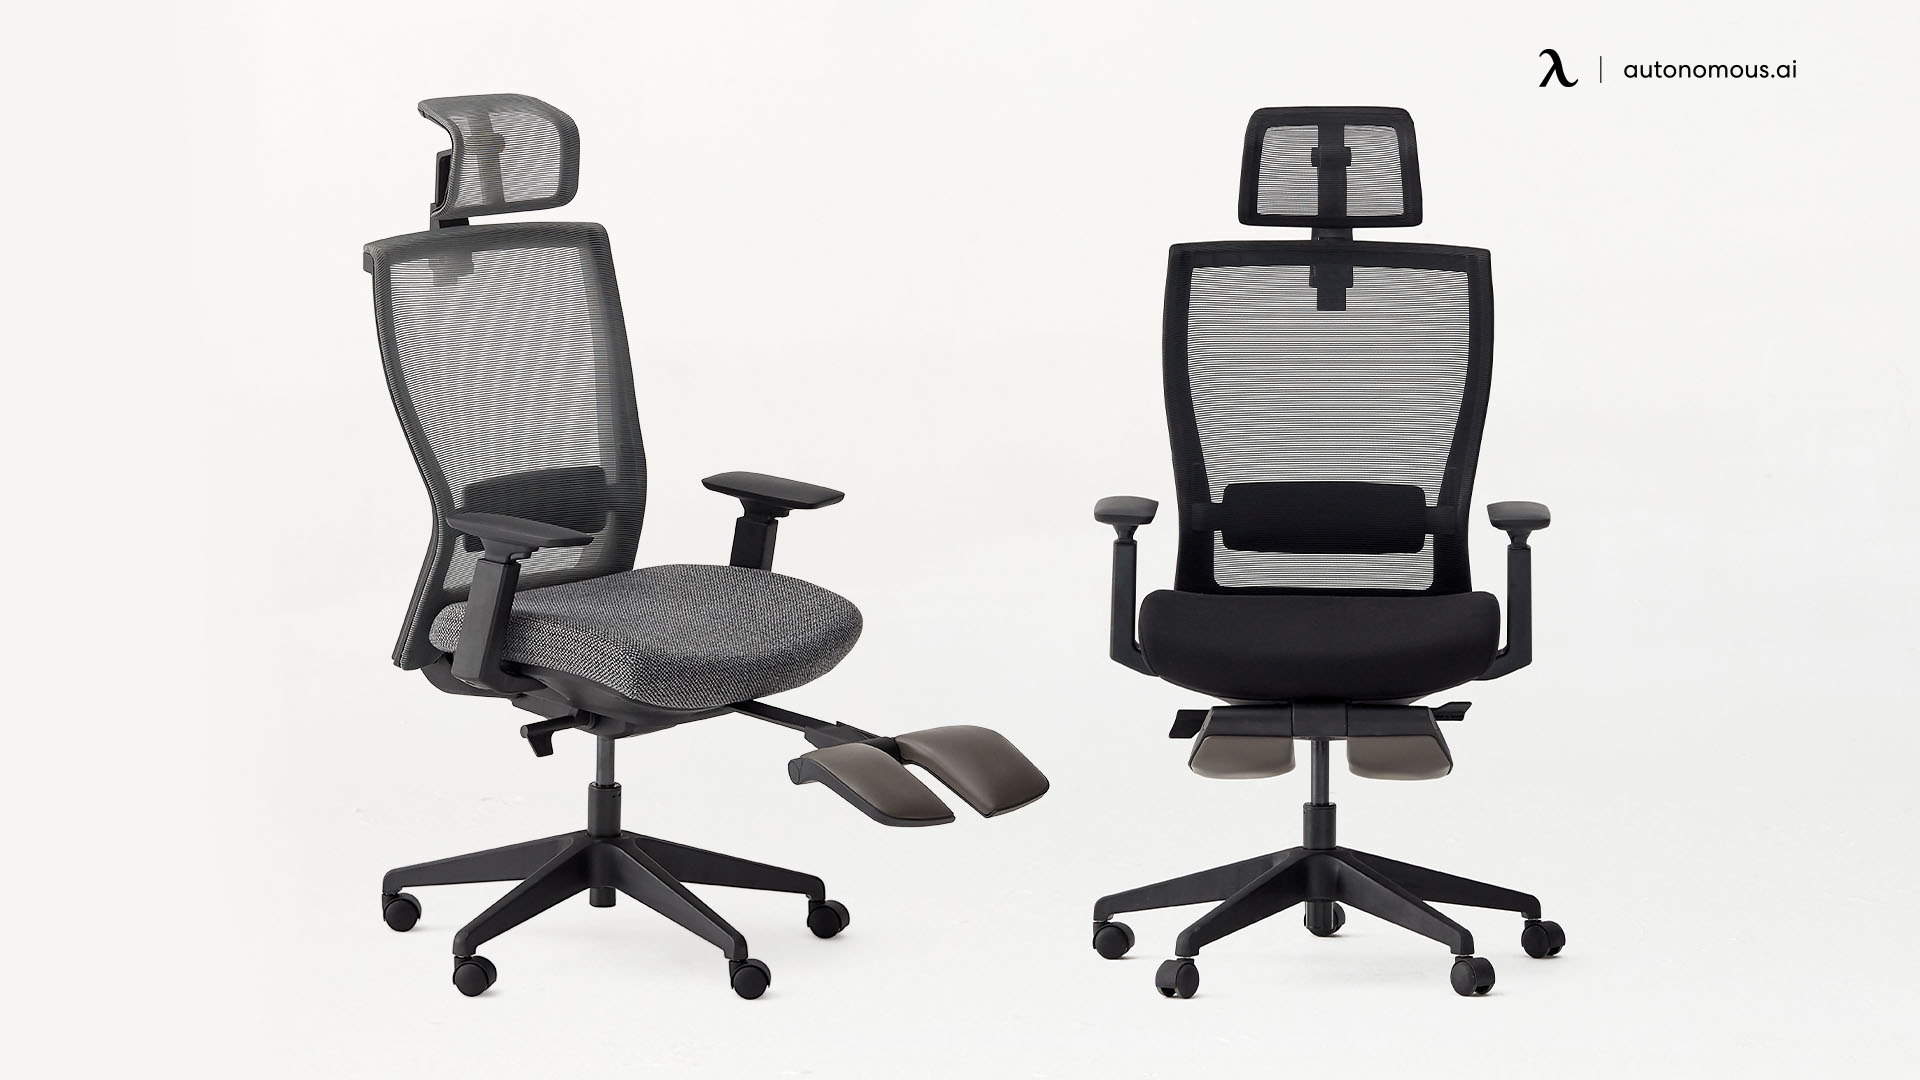 ErgoChair Recline modern office chairs